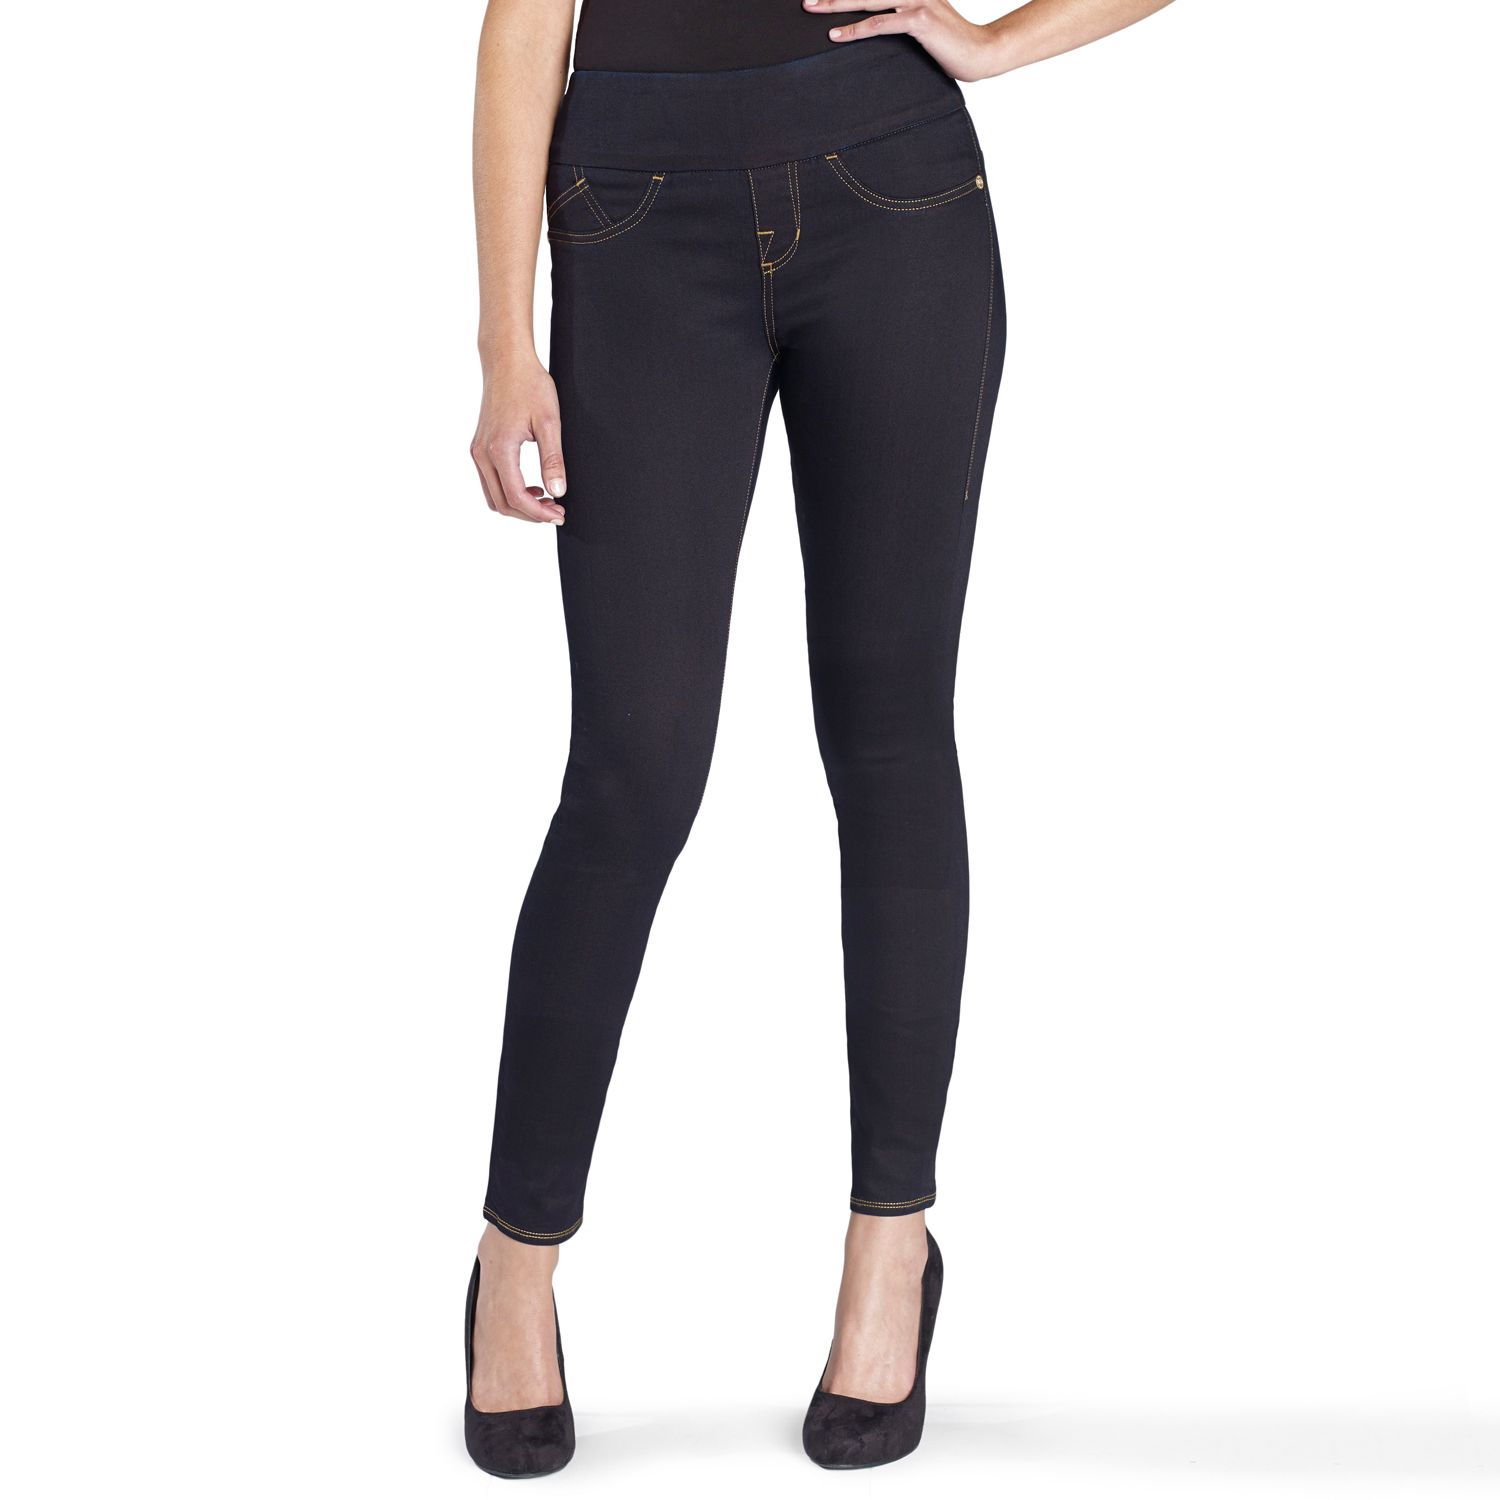 black skinny jeans size 22